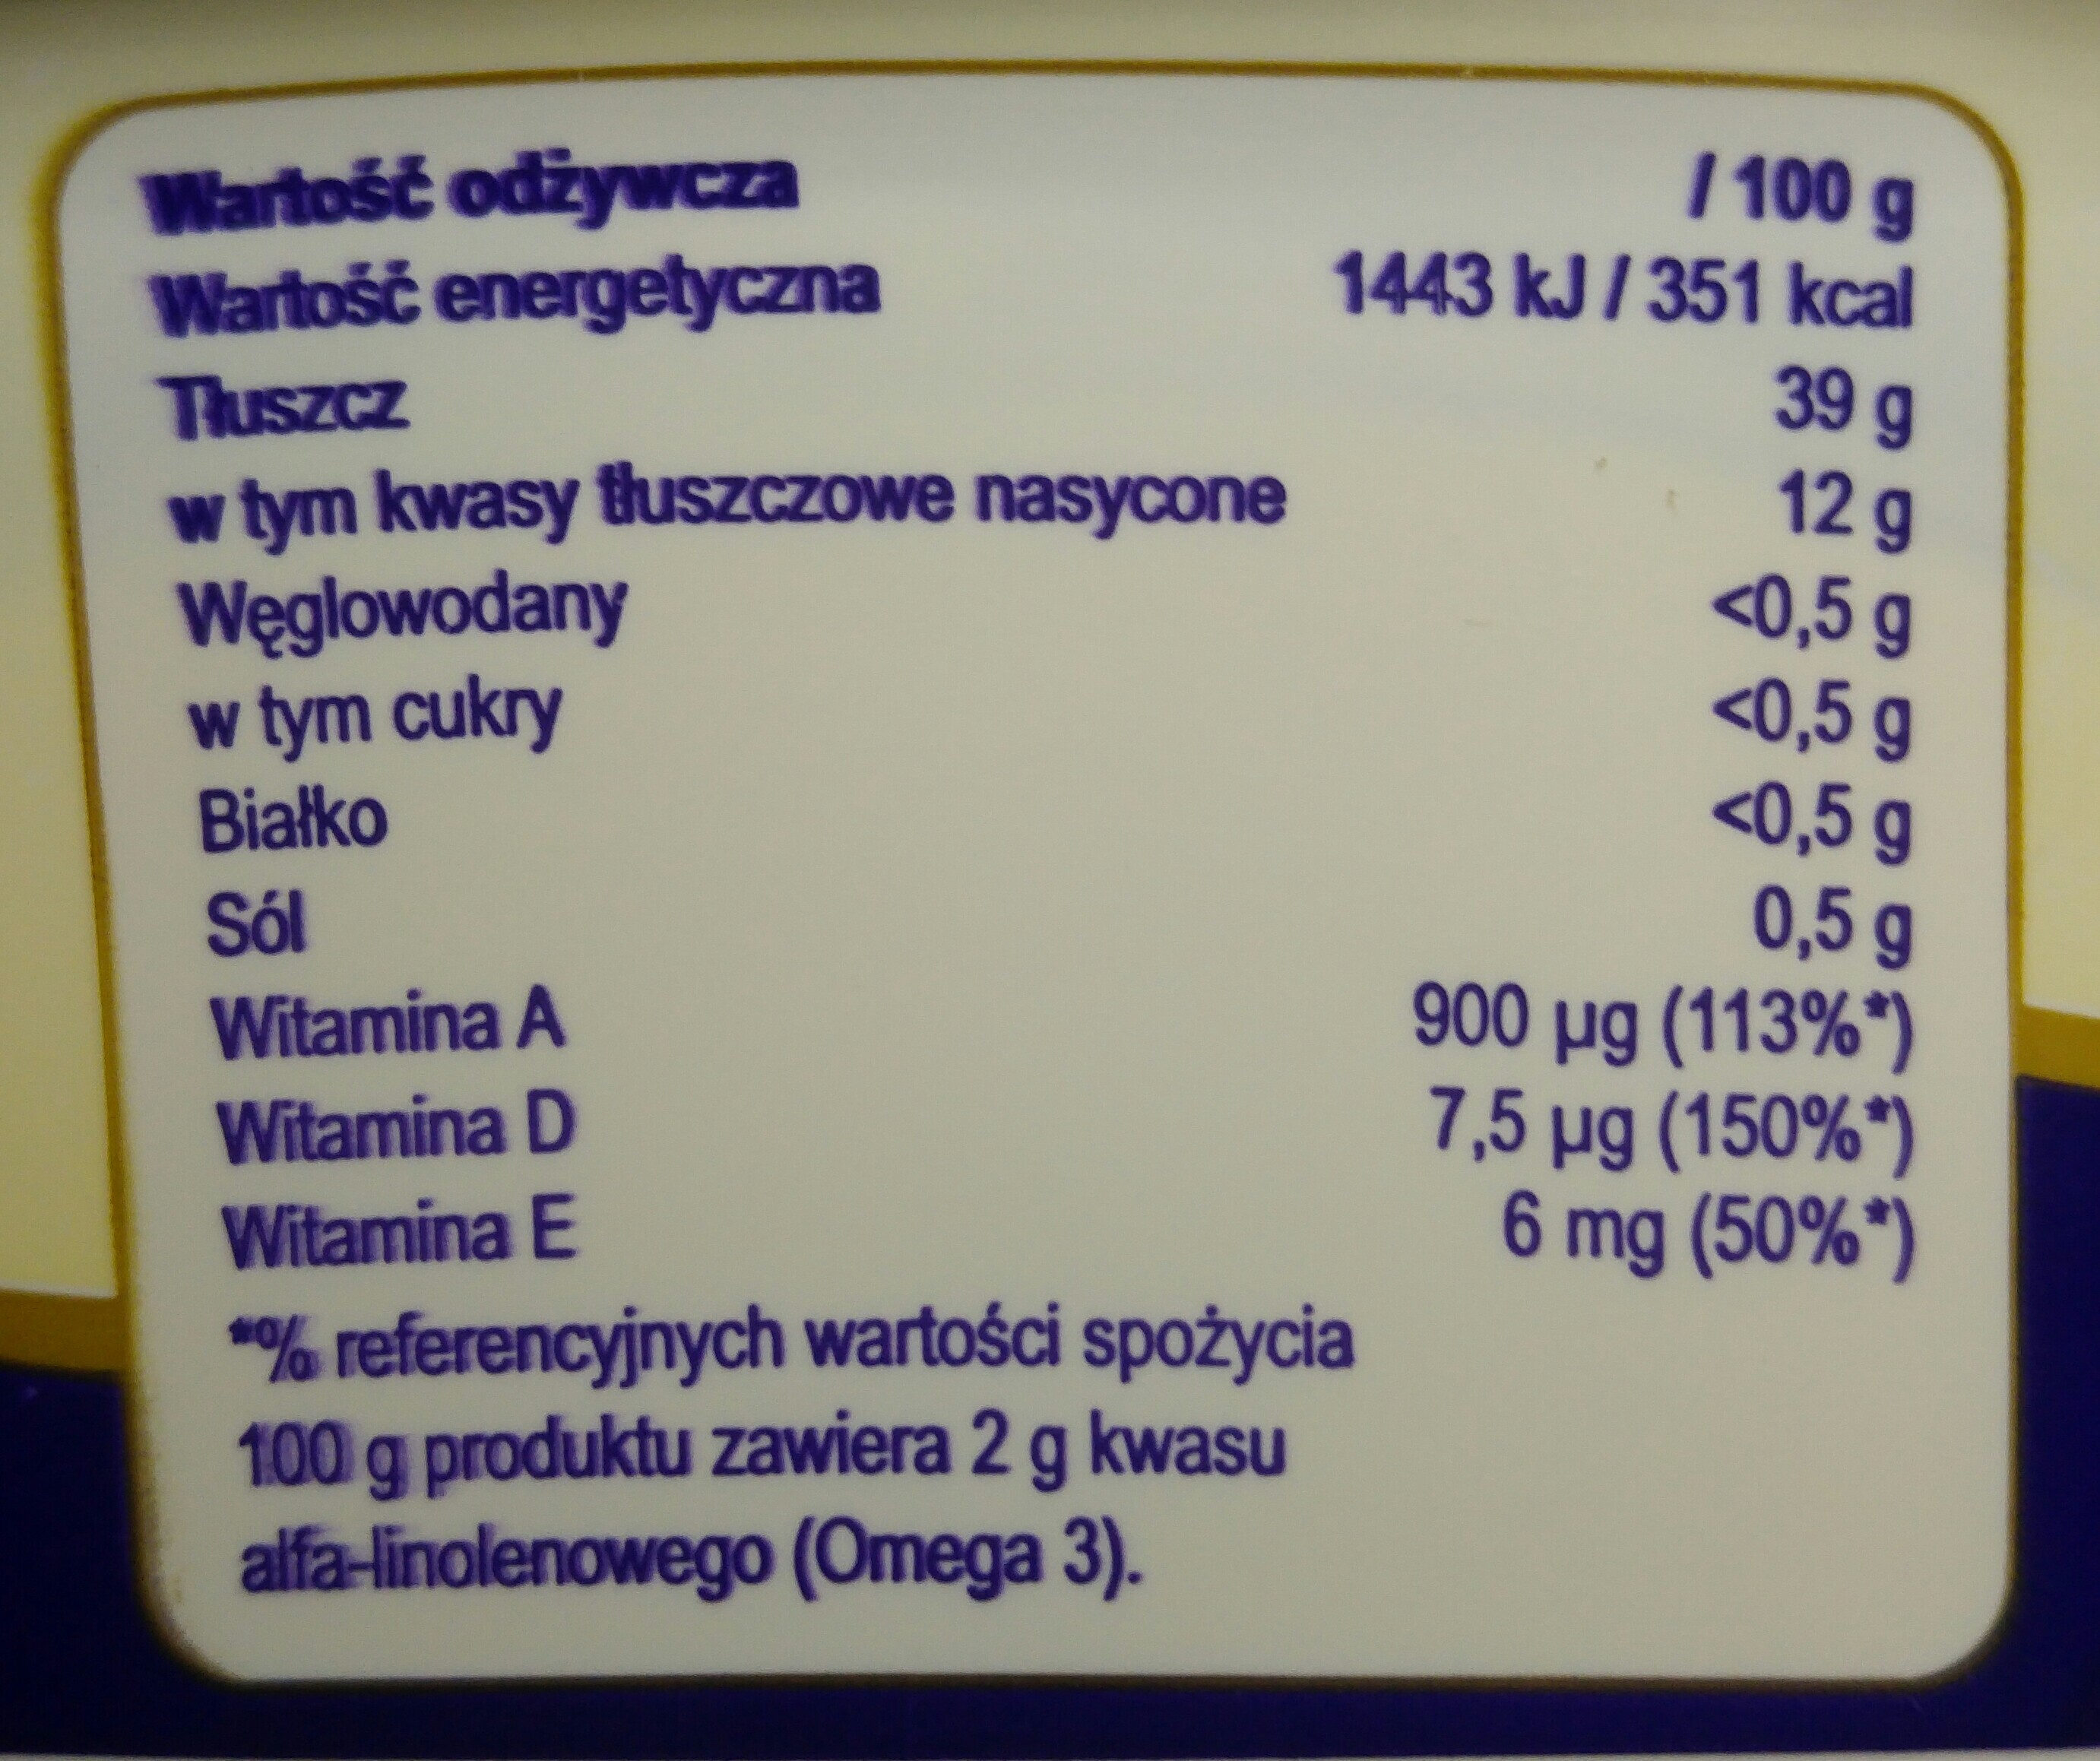 Smakowita margaryna półtłusta 39 % - maślany smak - Wartości odżywcze - pl